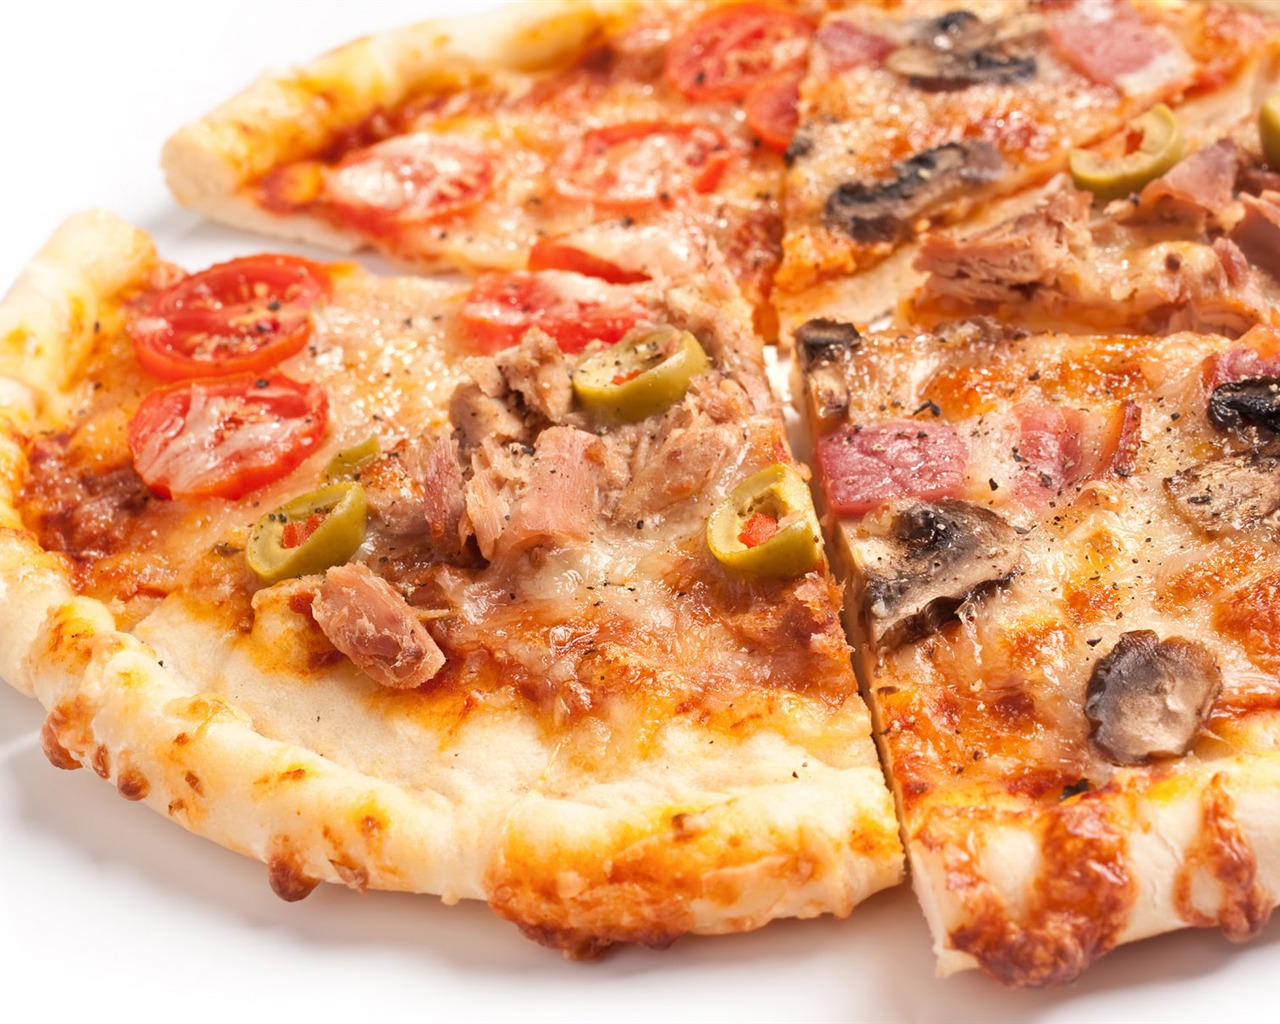 Fondos de pizzerías de Alimentos (3) #8 - 1280x1024